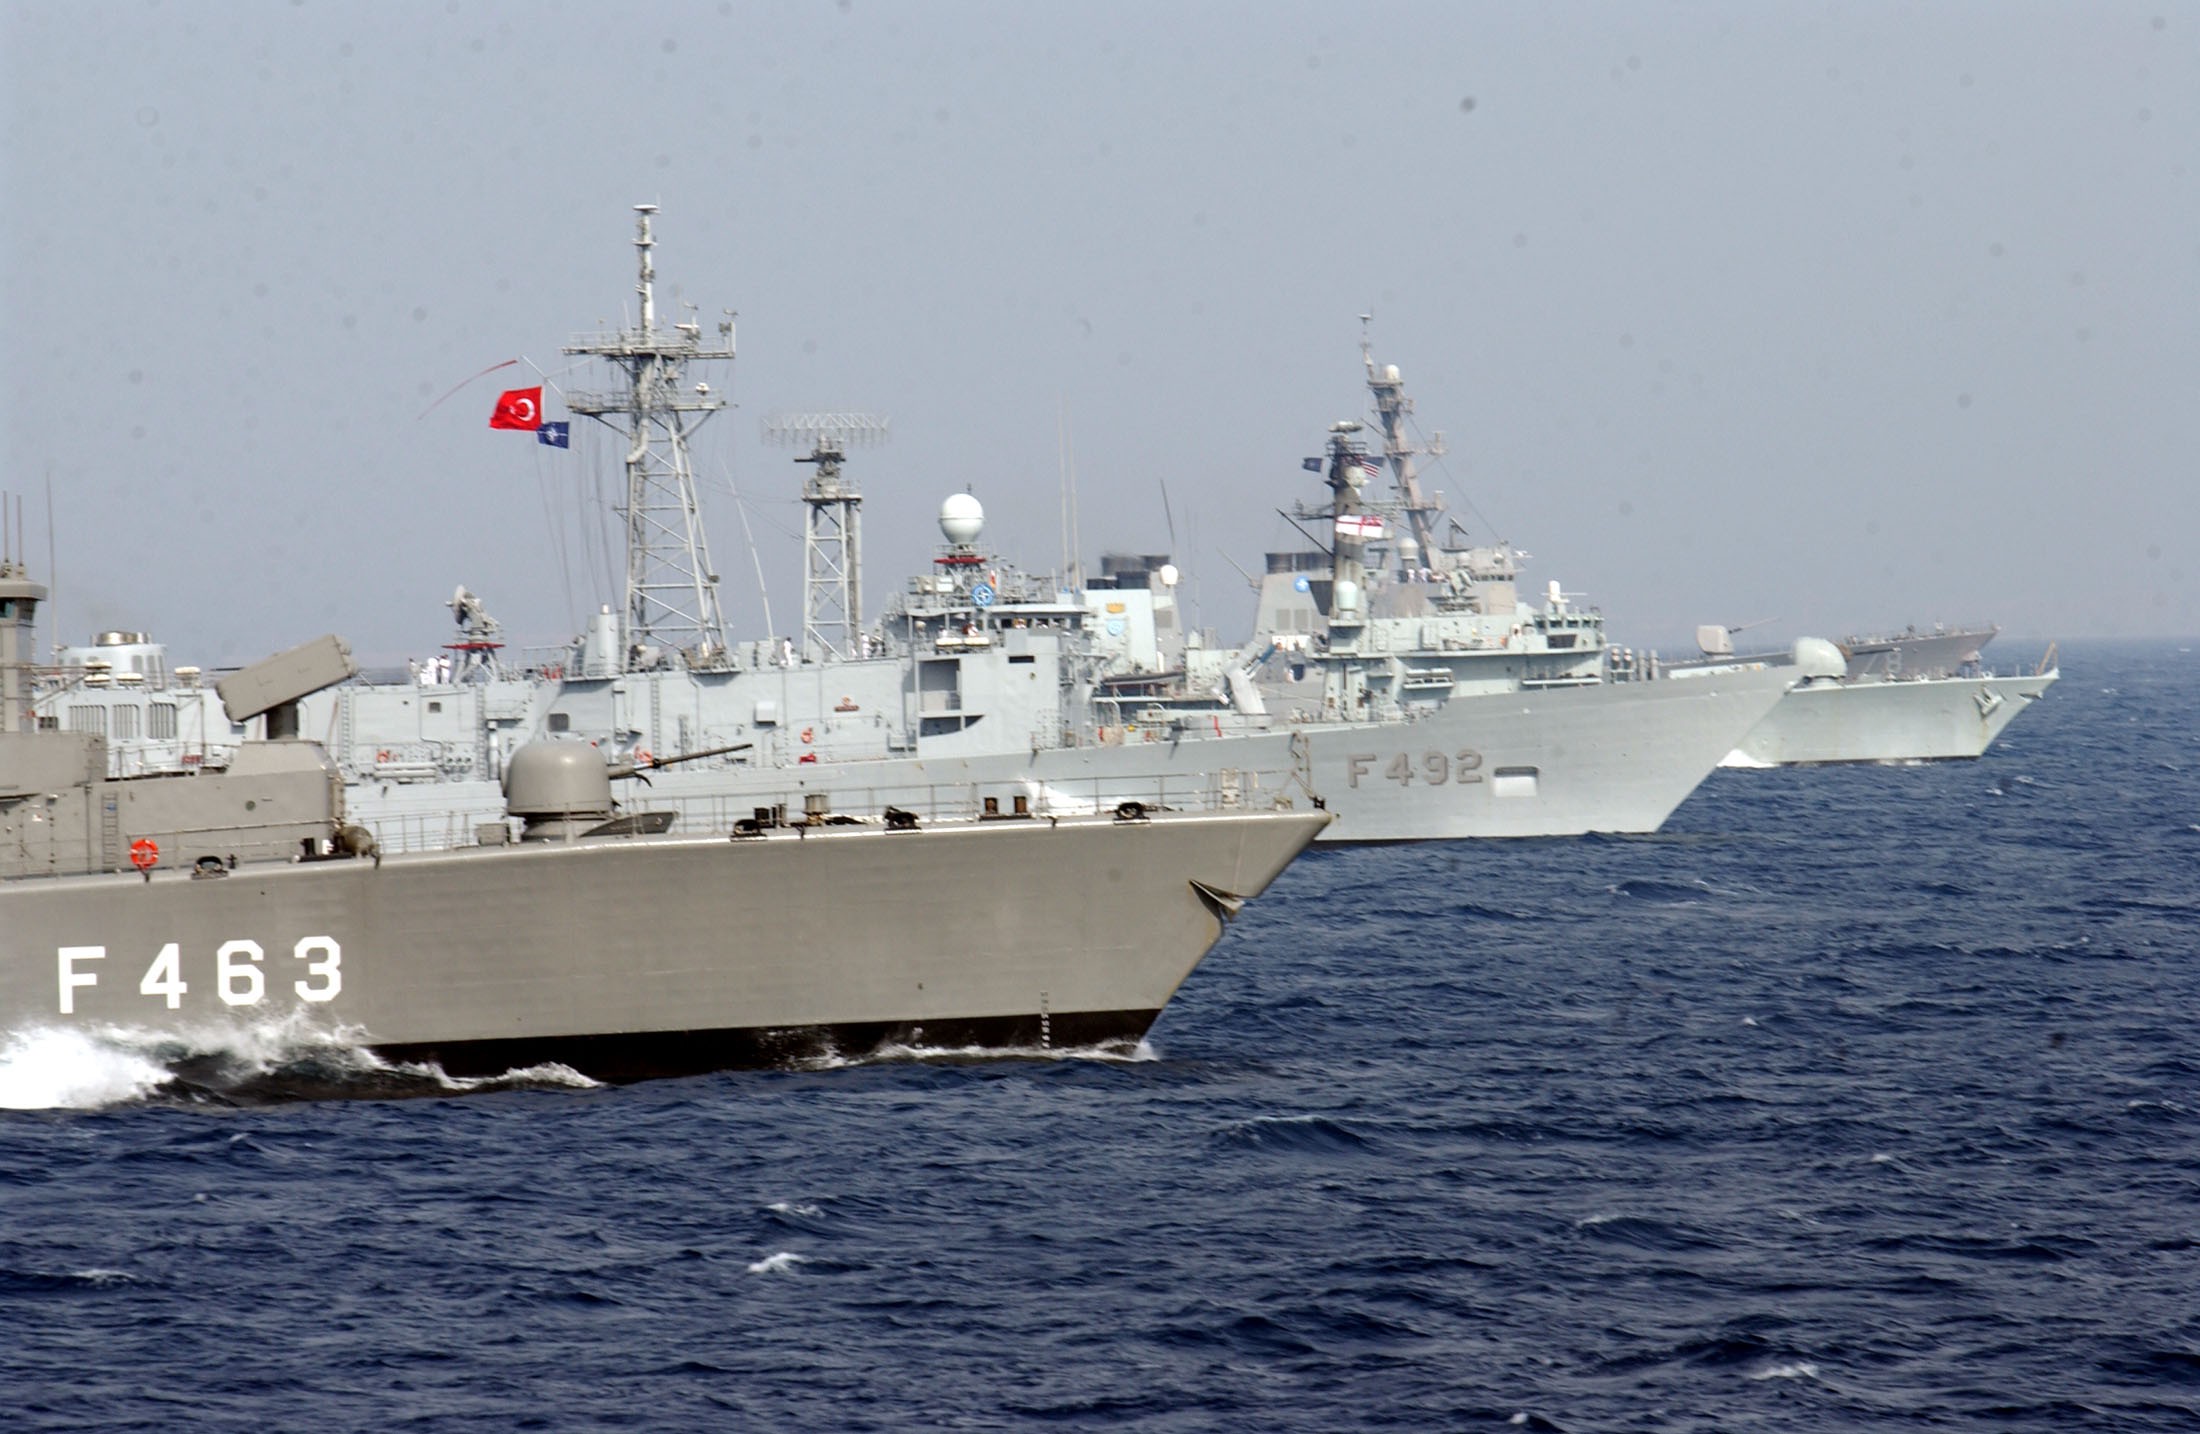 Τουρκικά πολεμικά πλοία στην καρδιά του Αιγαίου! Άσκηση με πυρά δίπλα στη Λέσβο [pics]